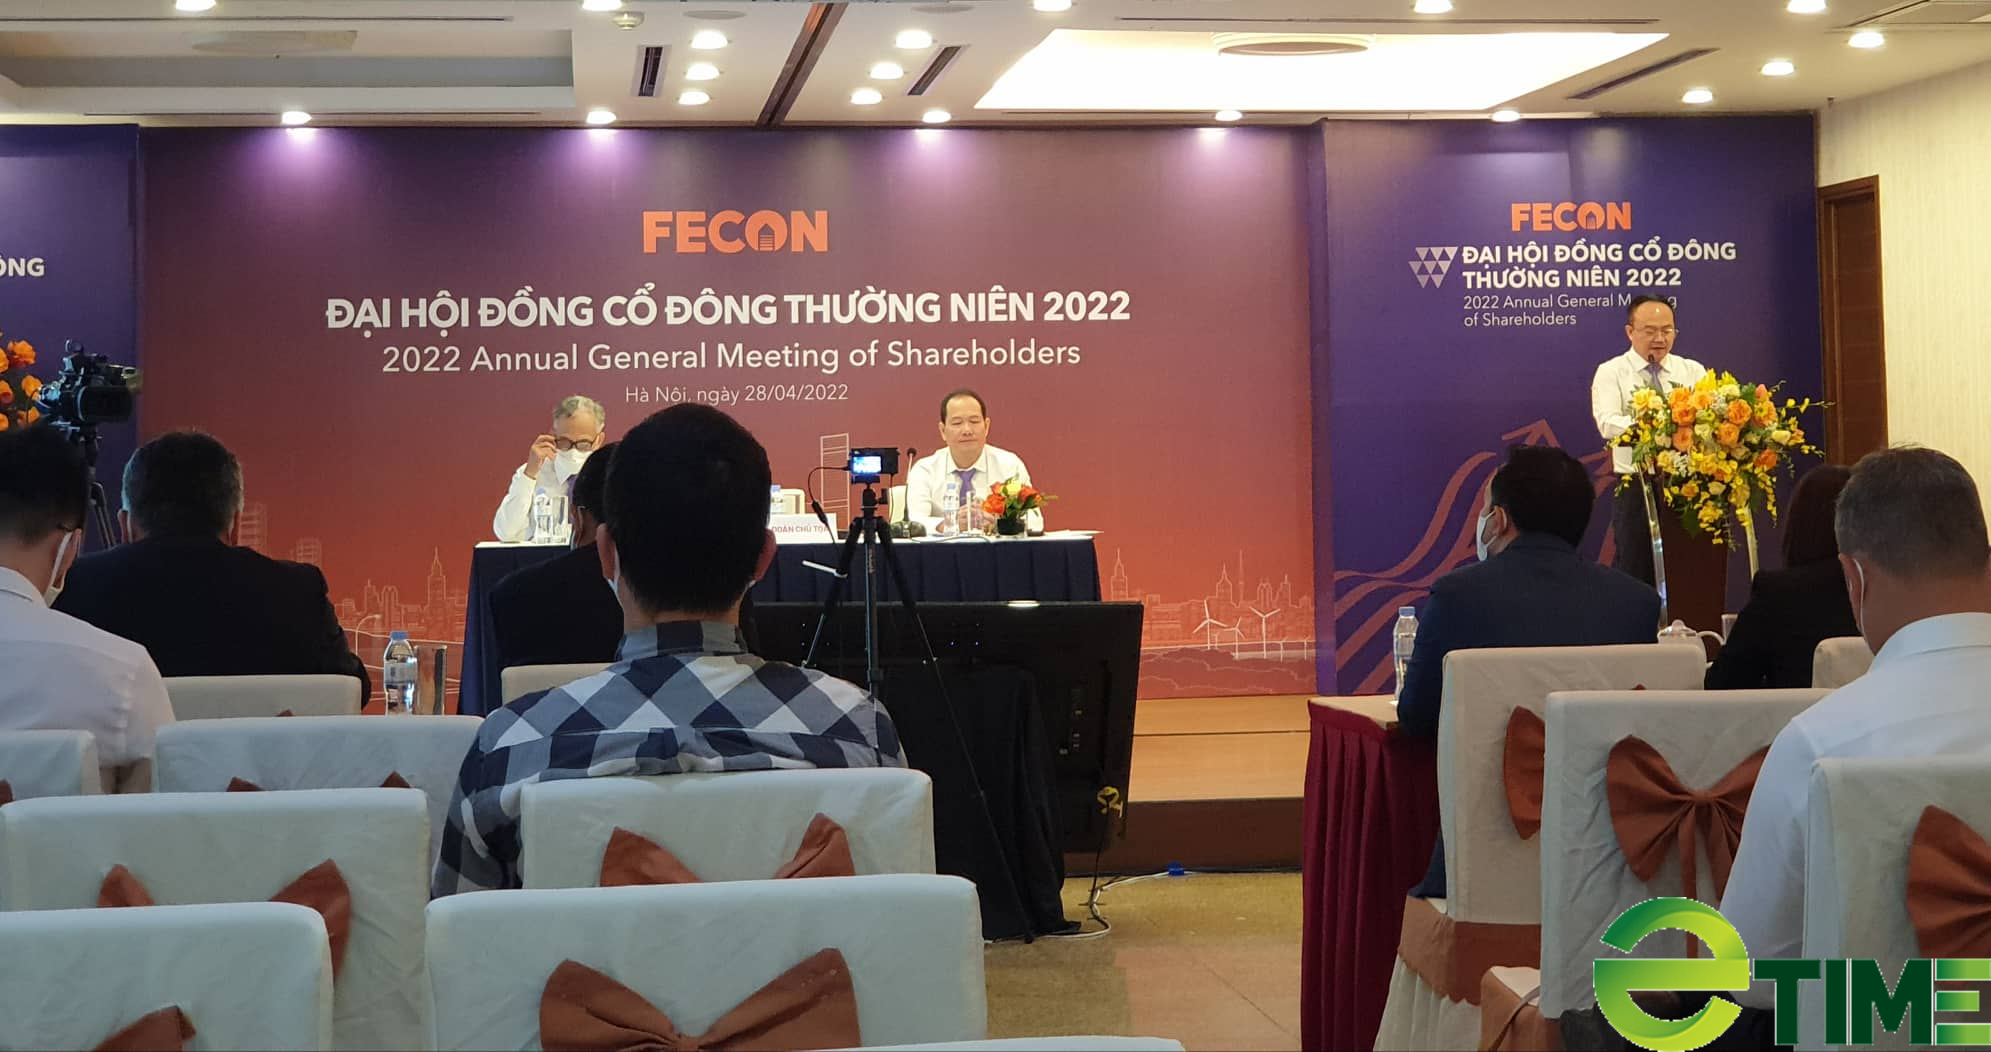 FECON (FCN) lỗ gần 7 tỷ đồng trong quý I/2022 - Ảnh 1.